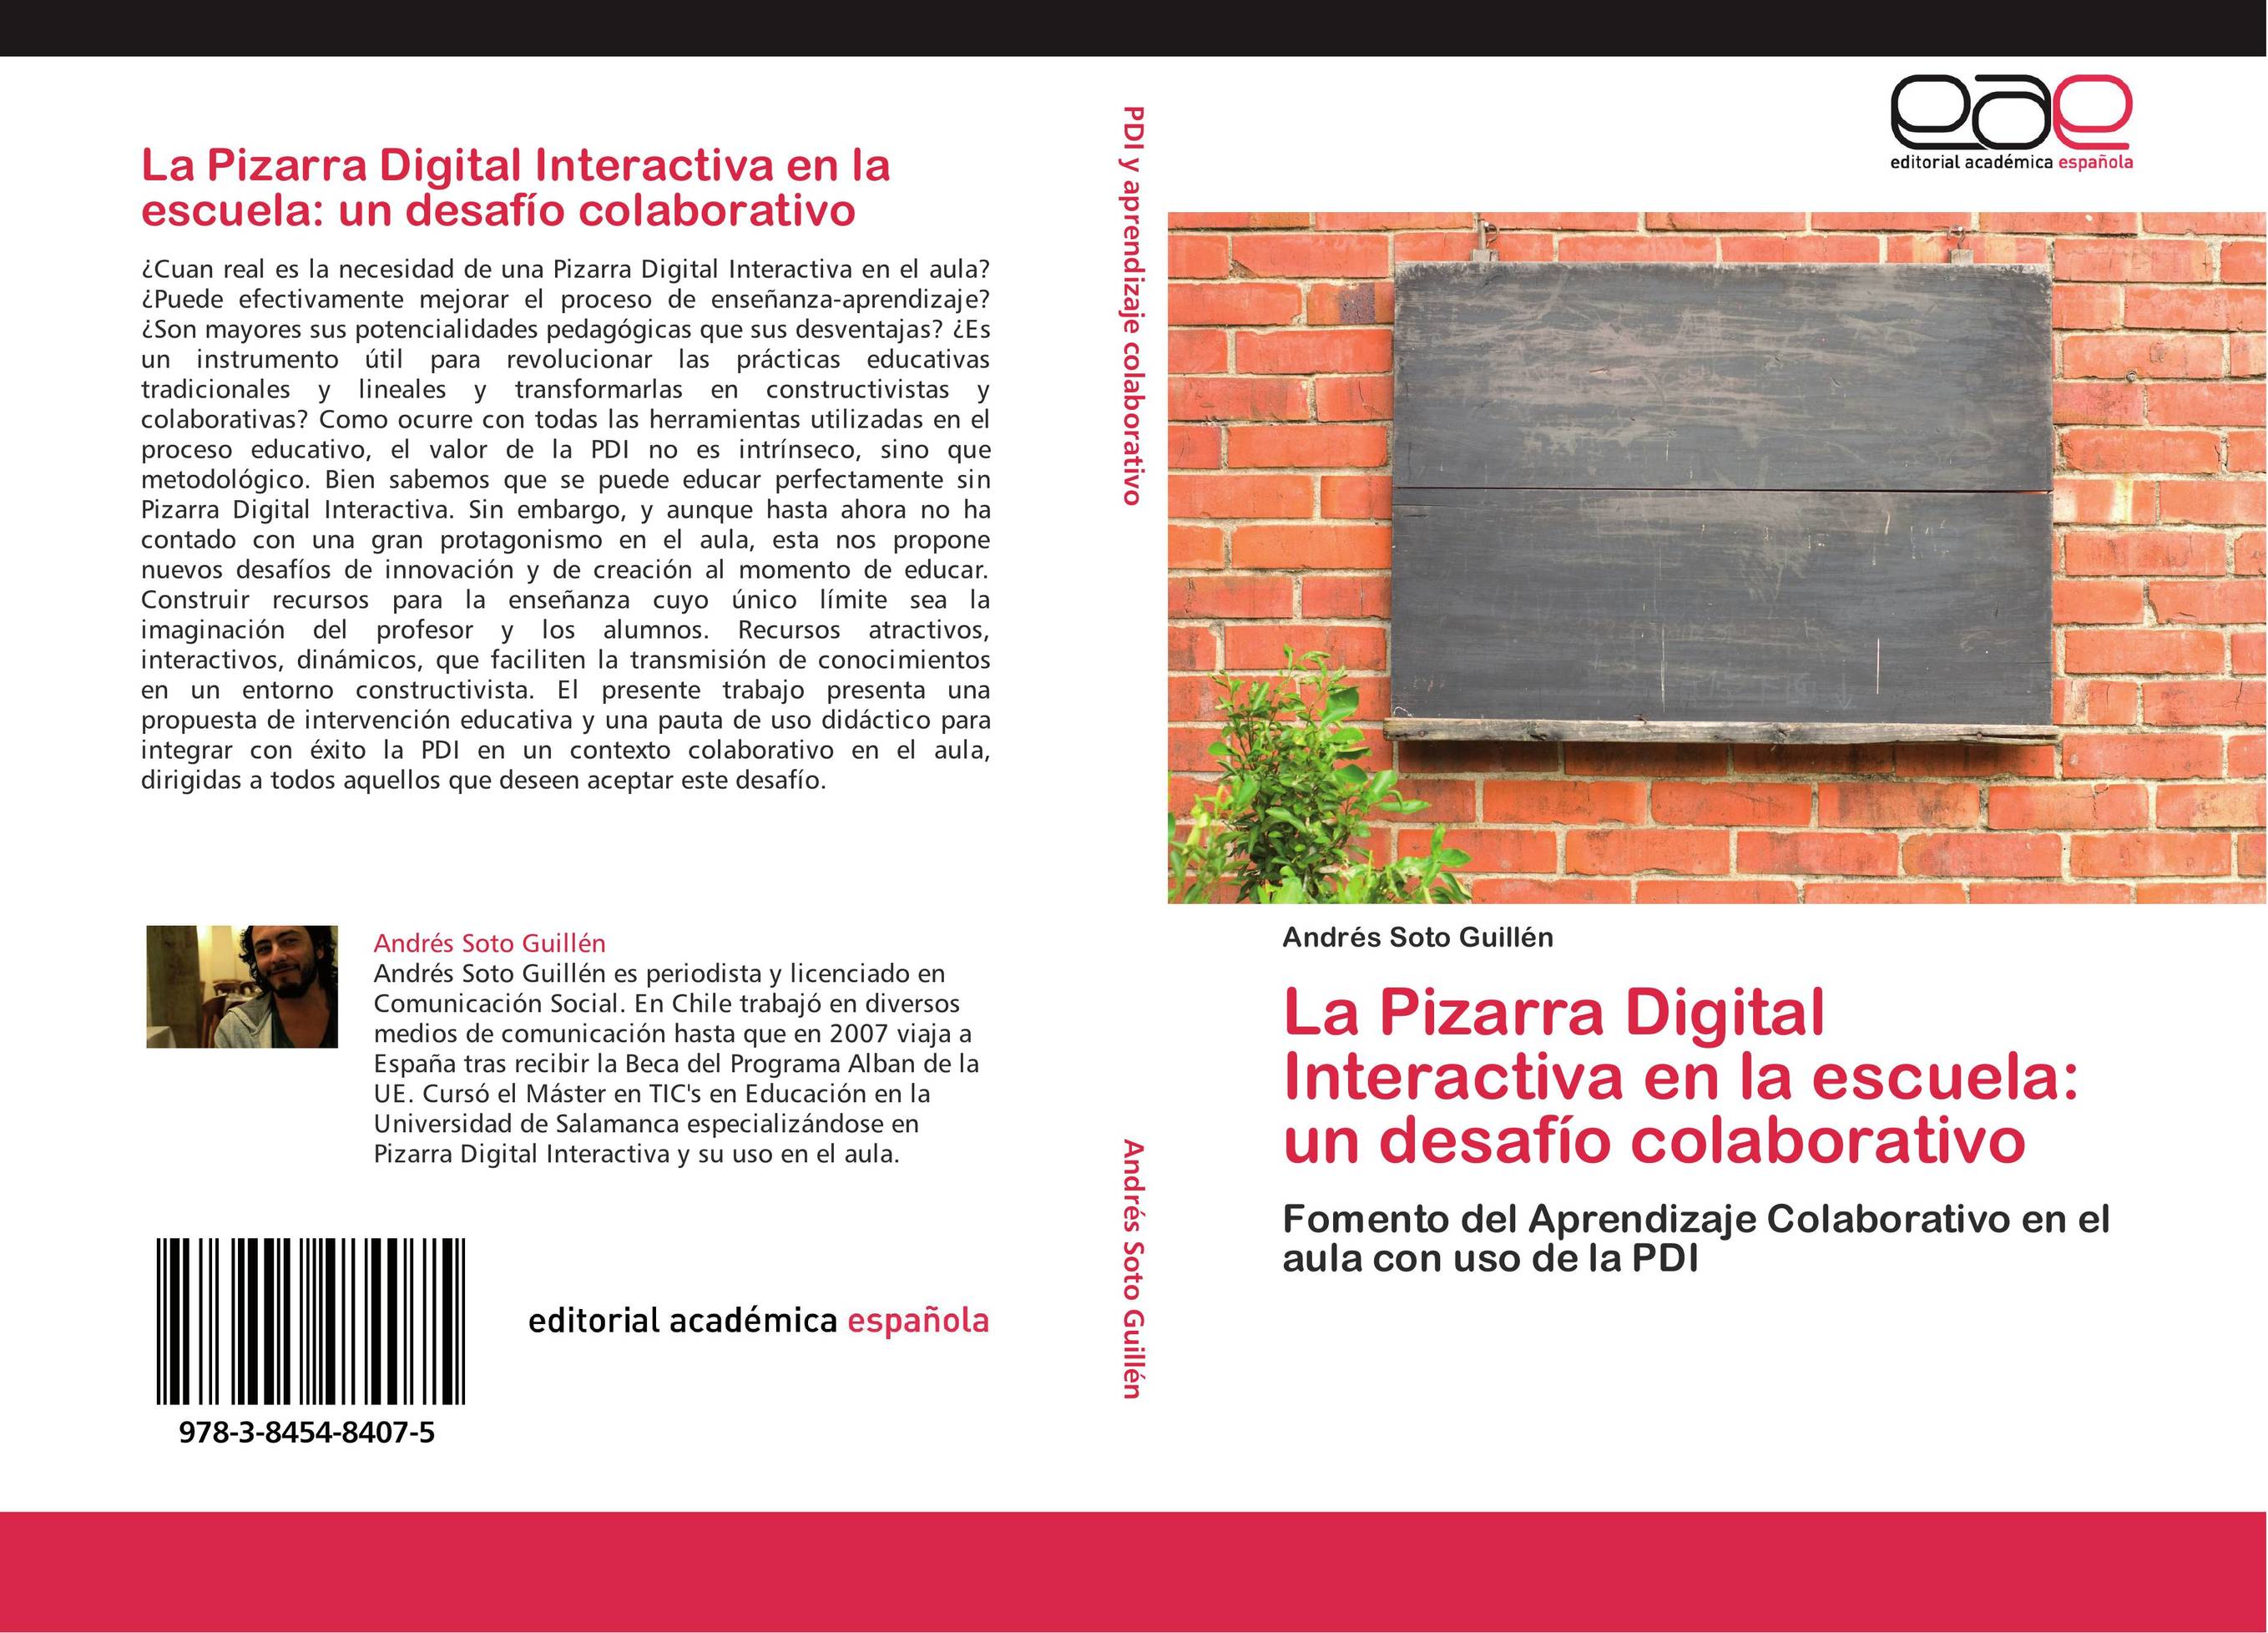 La Pizarra Digital Interactiva en la escuela: un desafío colaborativo